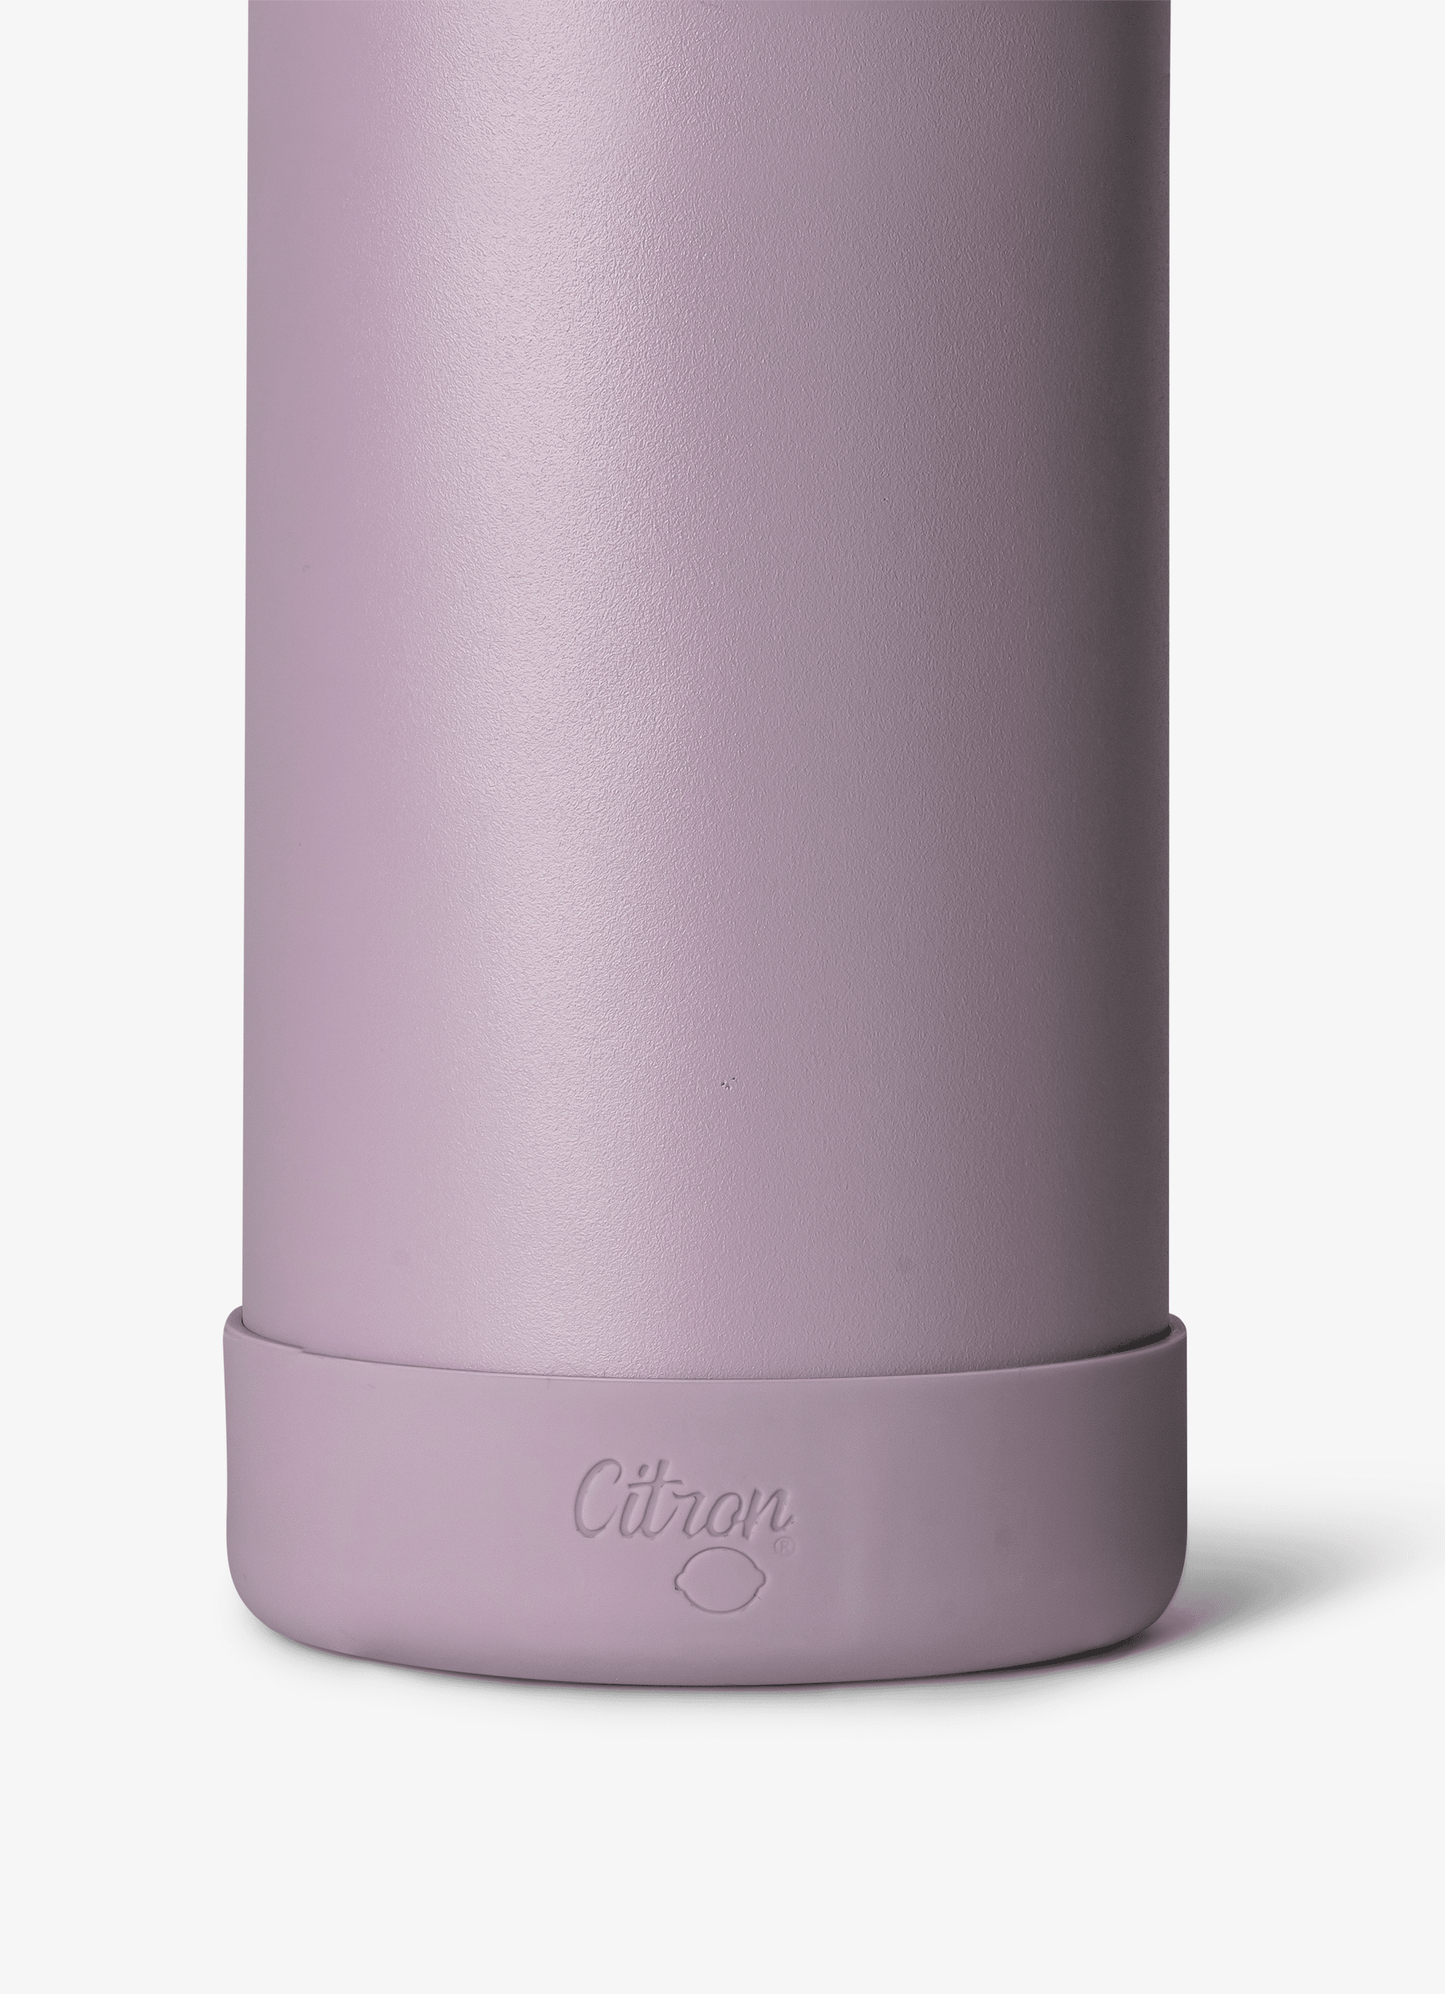 Water Bottle - 750ml - Purple